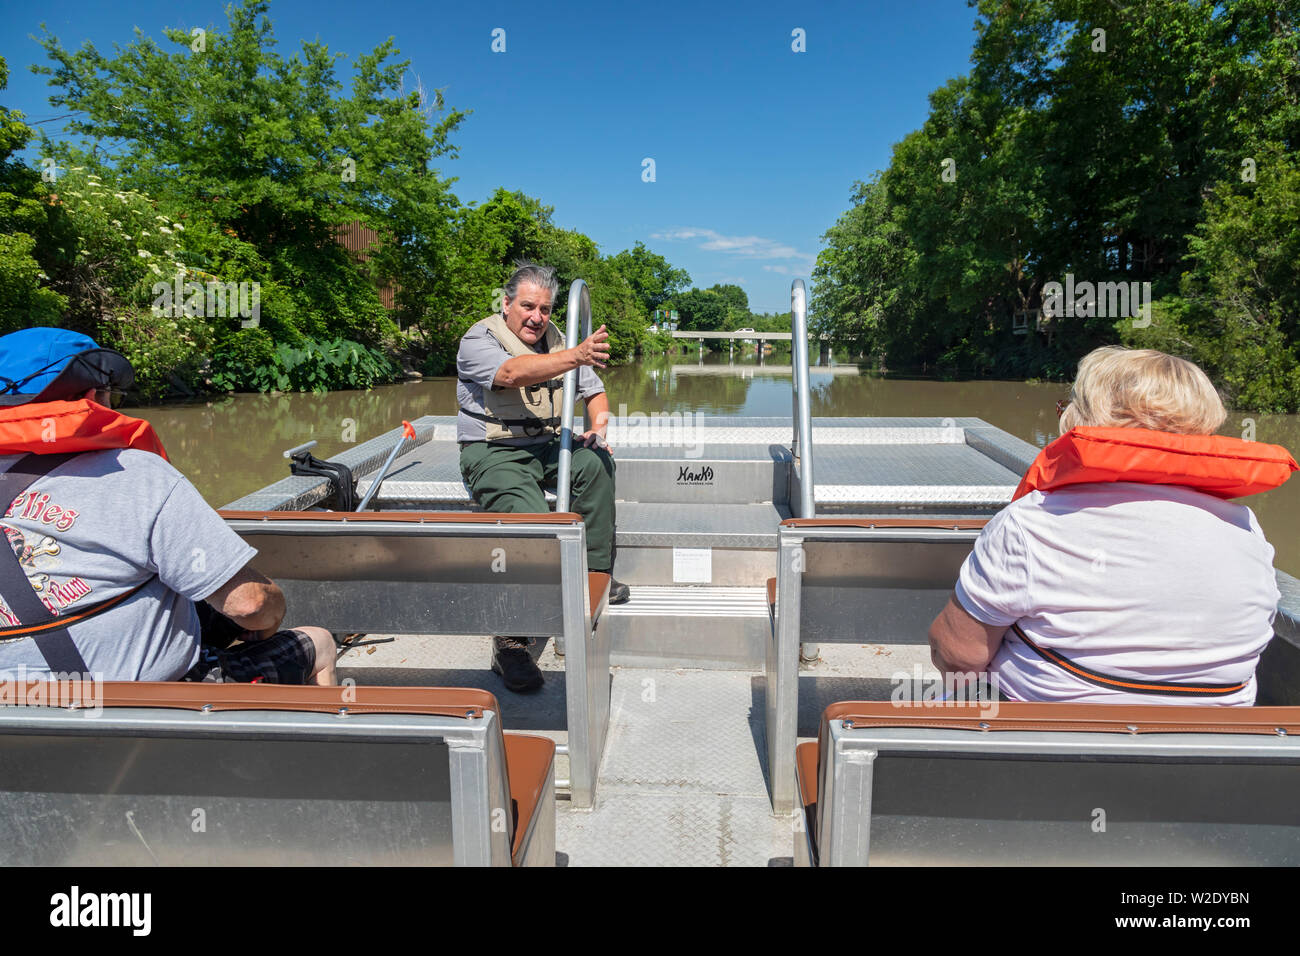 Thibodaux, Louisiana - Un gardien de parc donne un exposé à des visiteurs pendant une excursion en bateau sur le Bayou Lafourche. Des visites guidées sont offertes par les zones humides de la culture acadienne Banque D'Images